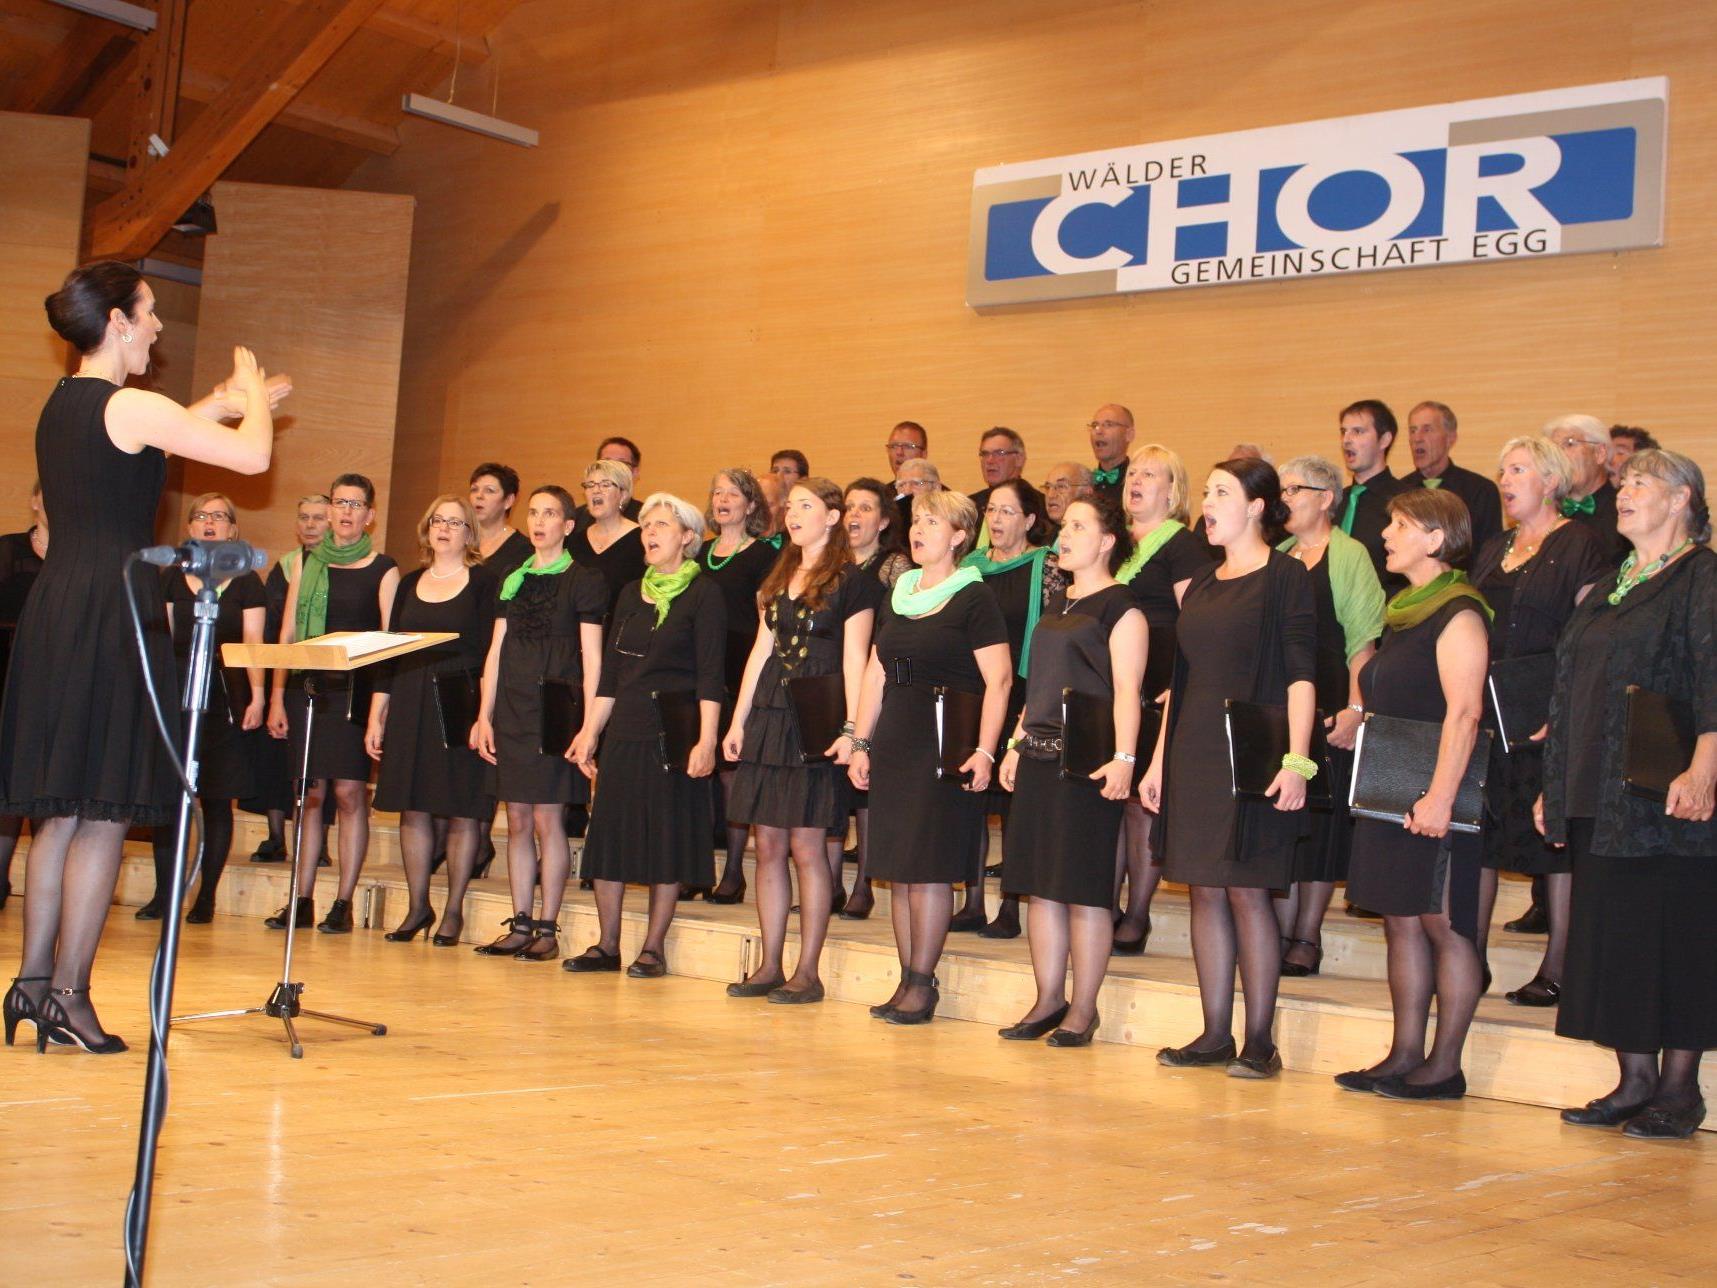 Die Sängerinnen und Sänger der Wälder Chorgemeinschaft freuen sich auf viele Besucher bei den Konzerten.